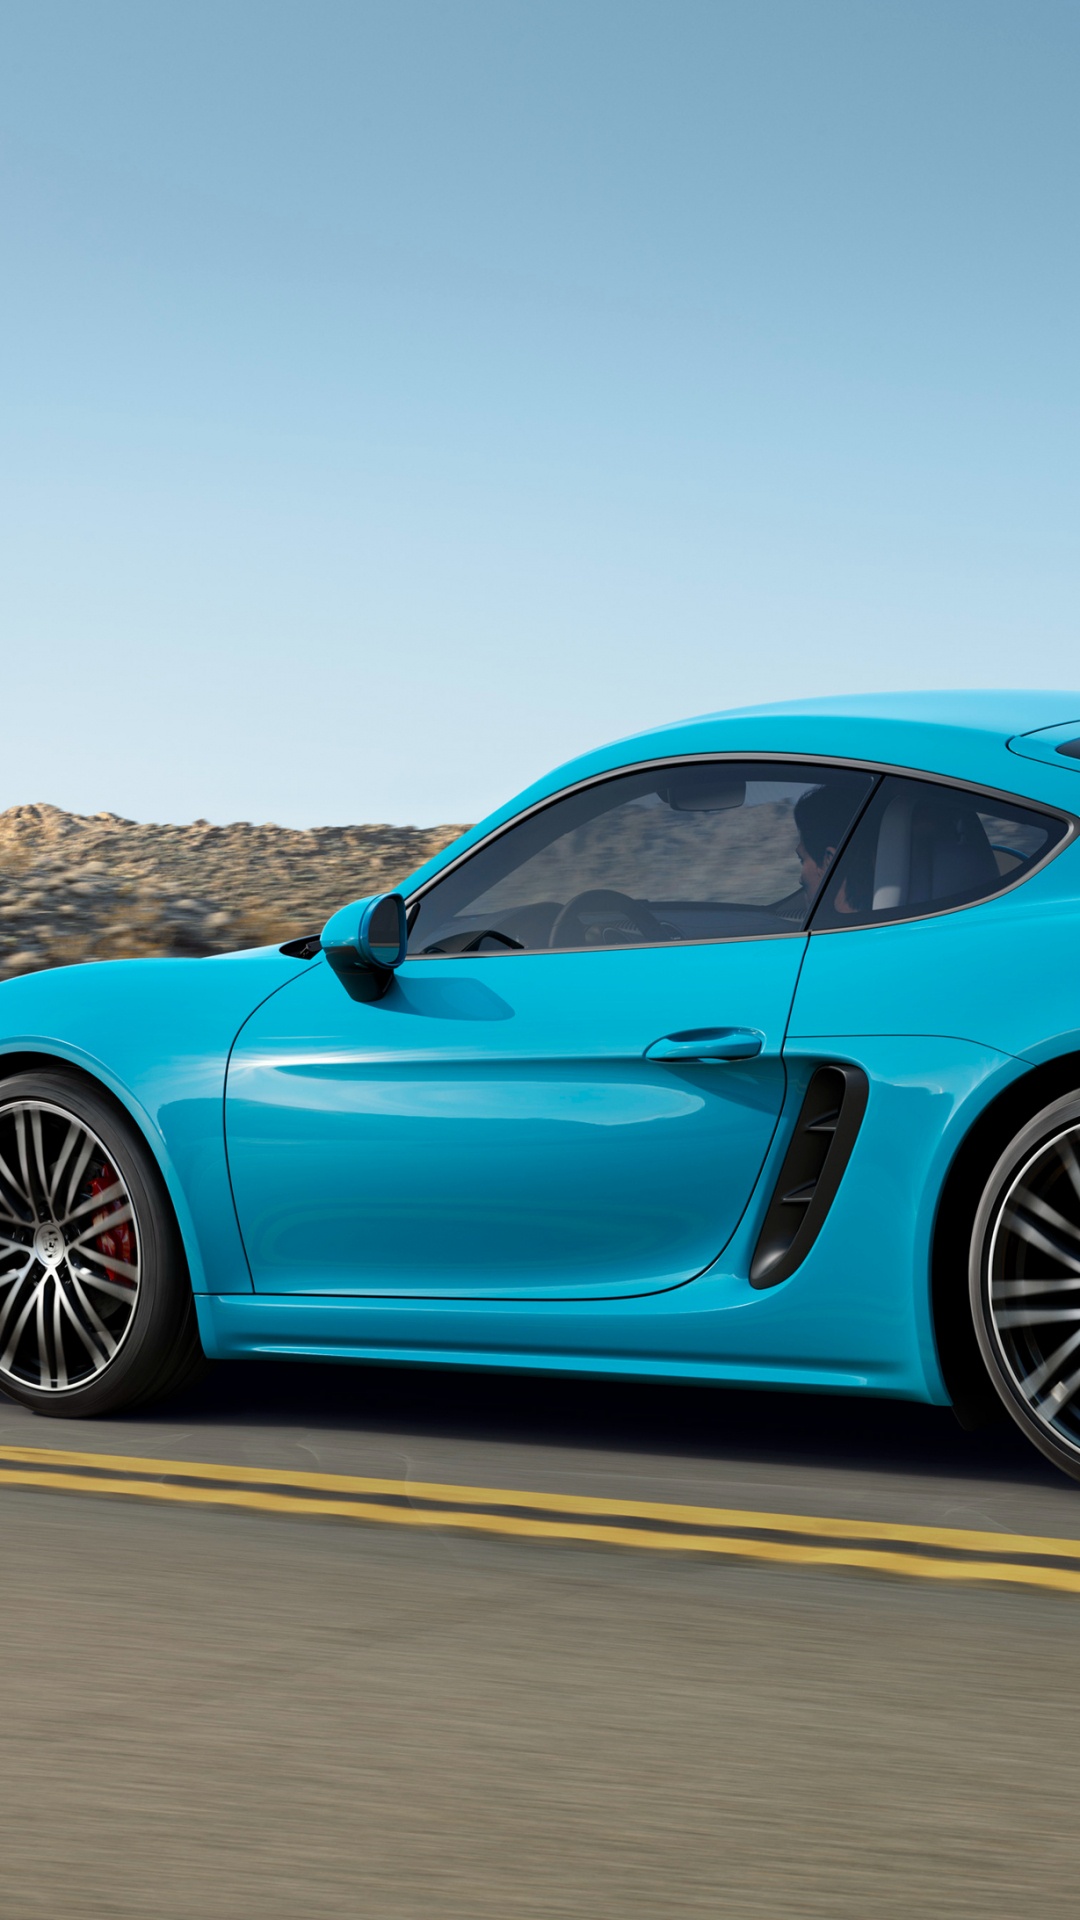 Porsche 911 Azul Sobre la Carretera de Asfalto Gris Durante el Día. Wallpaper in 1080x1920 Resolution